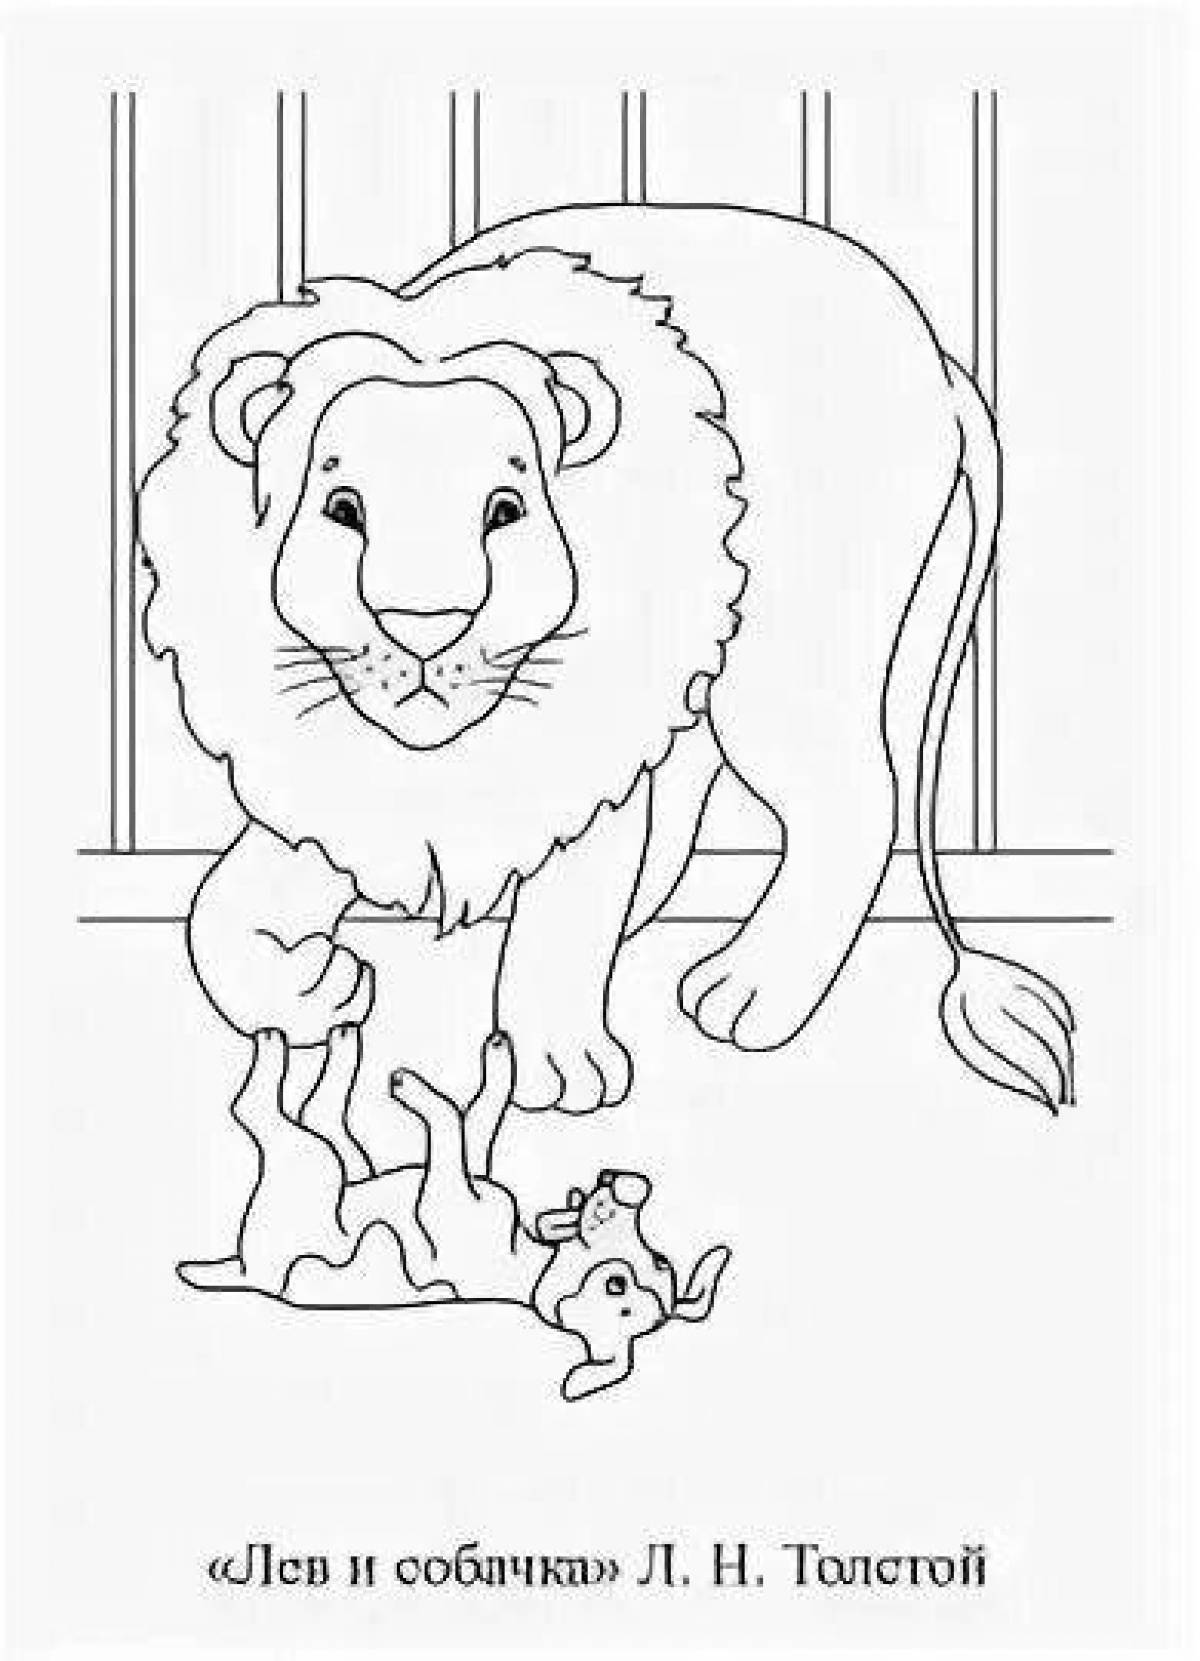 Иллюстрация к произведению Толстого Лев и собачка